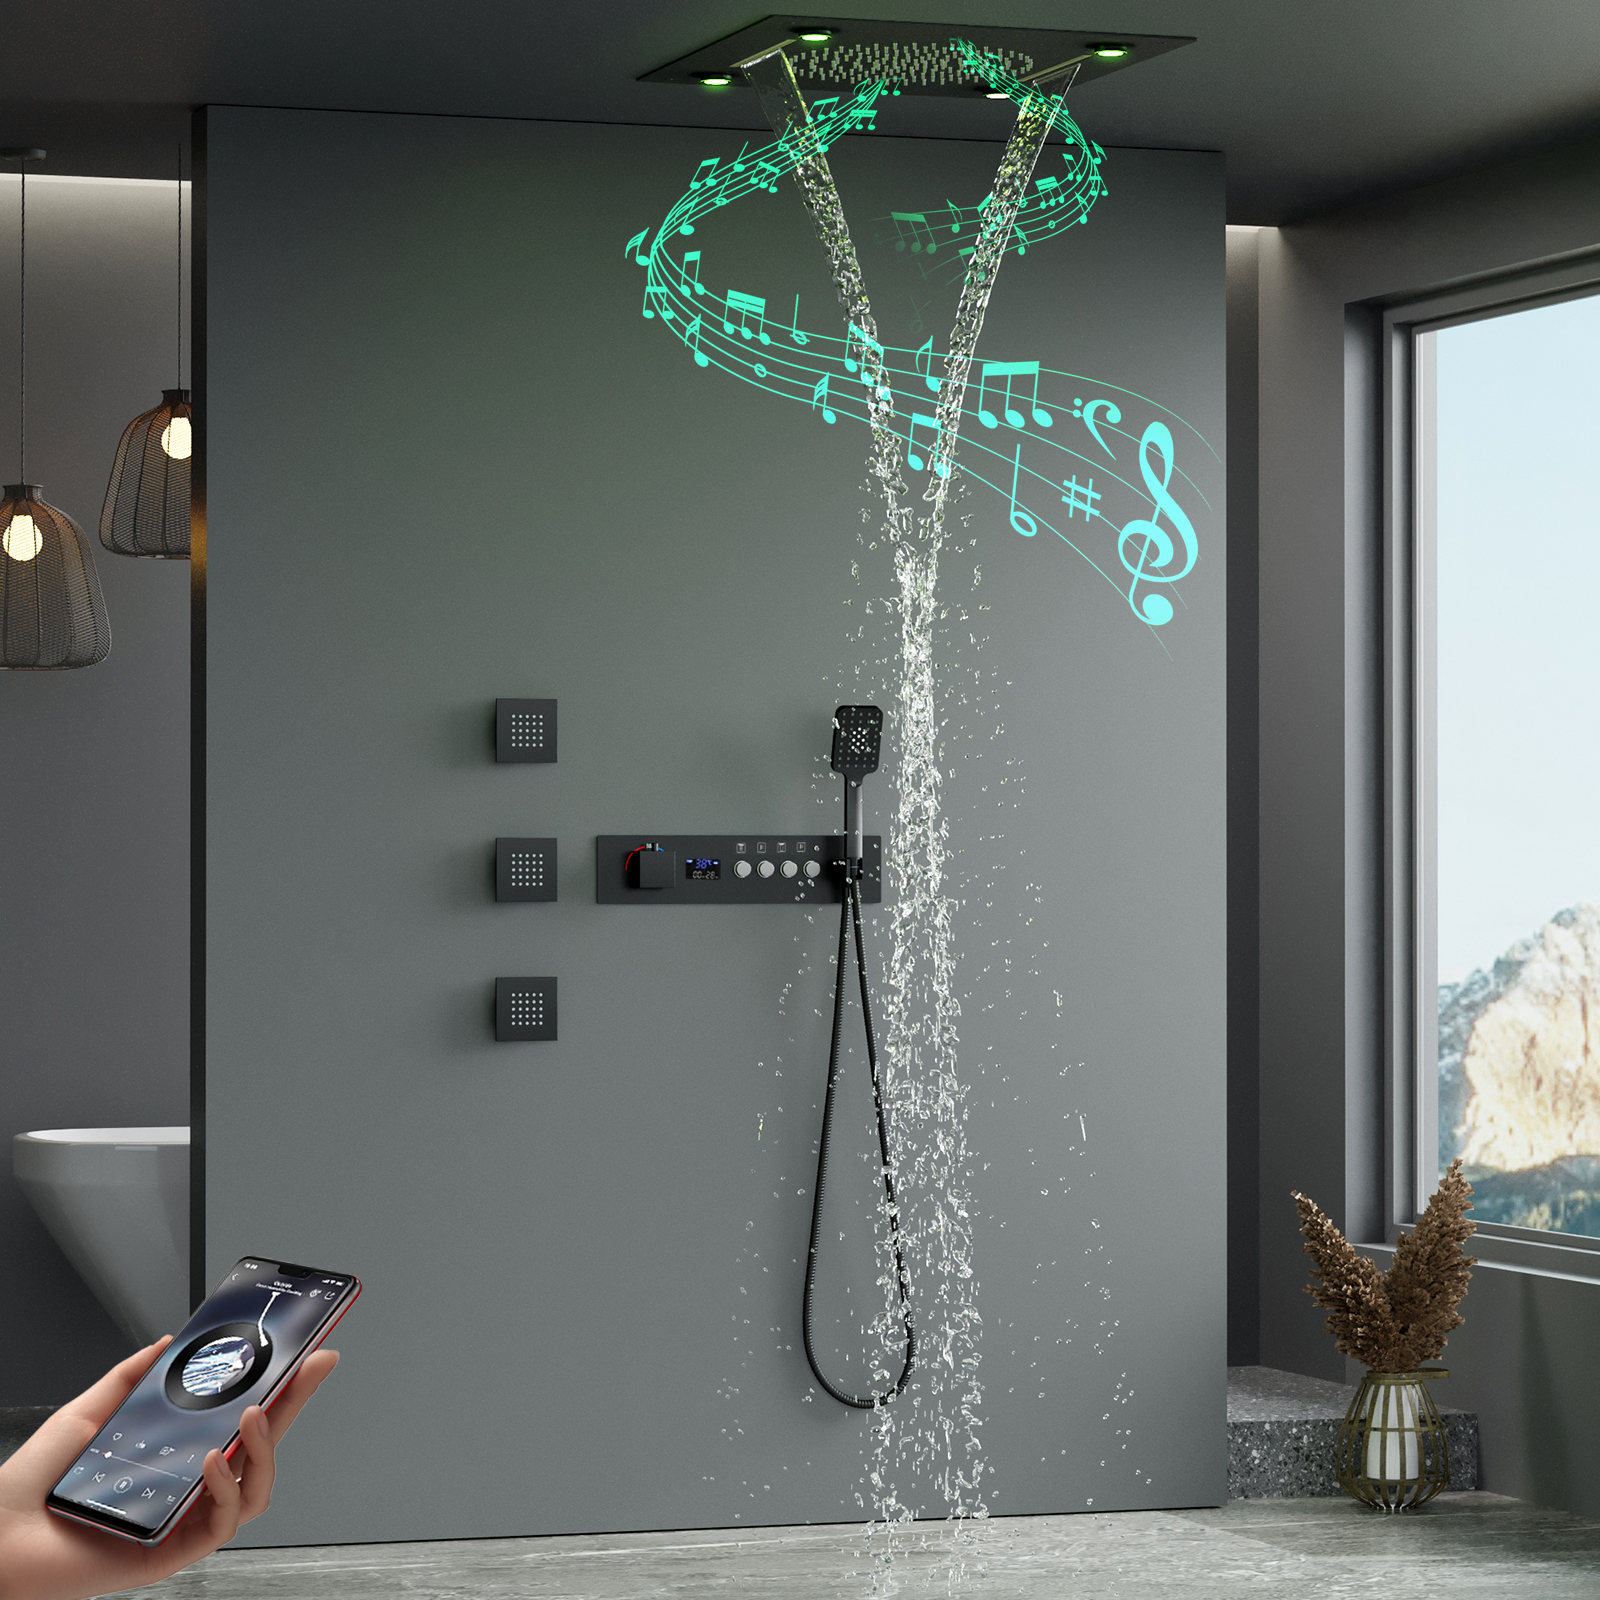 Transforme sua rotina de banho com chuveiros LED com alto-falante Bluetooth